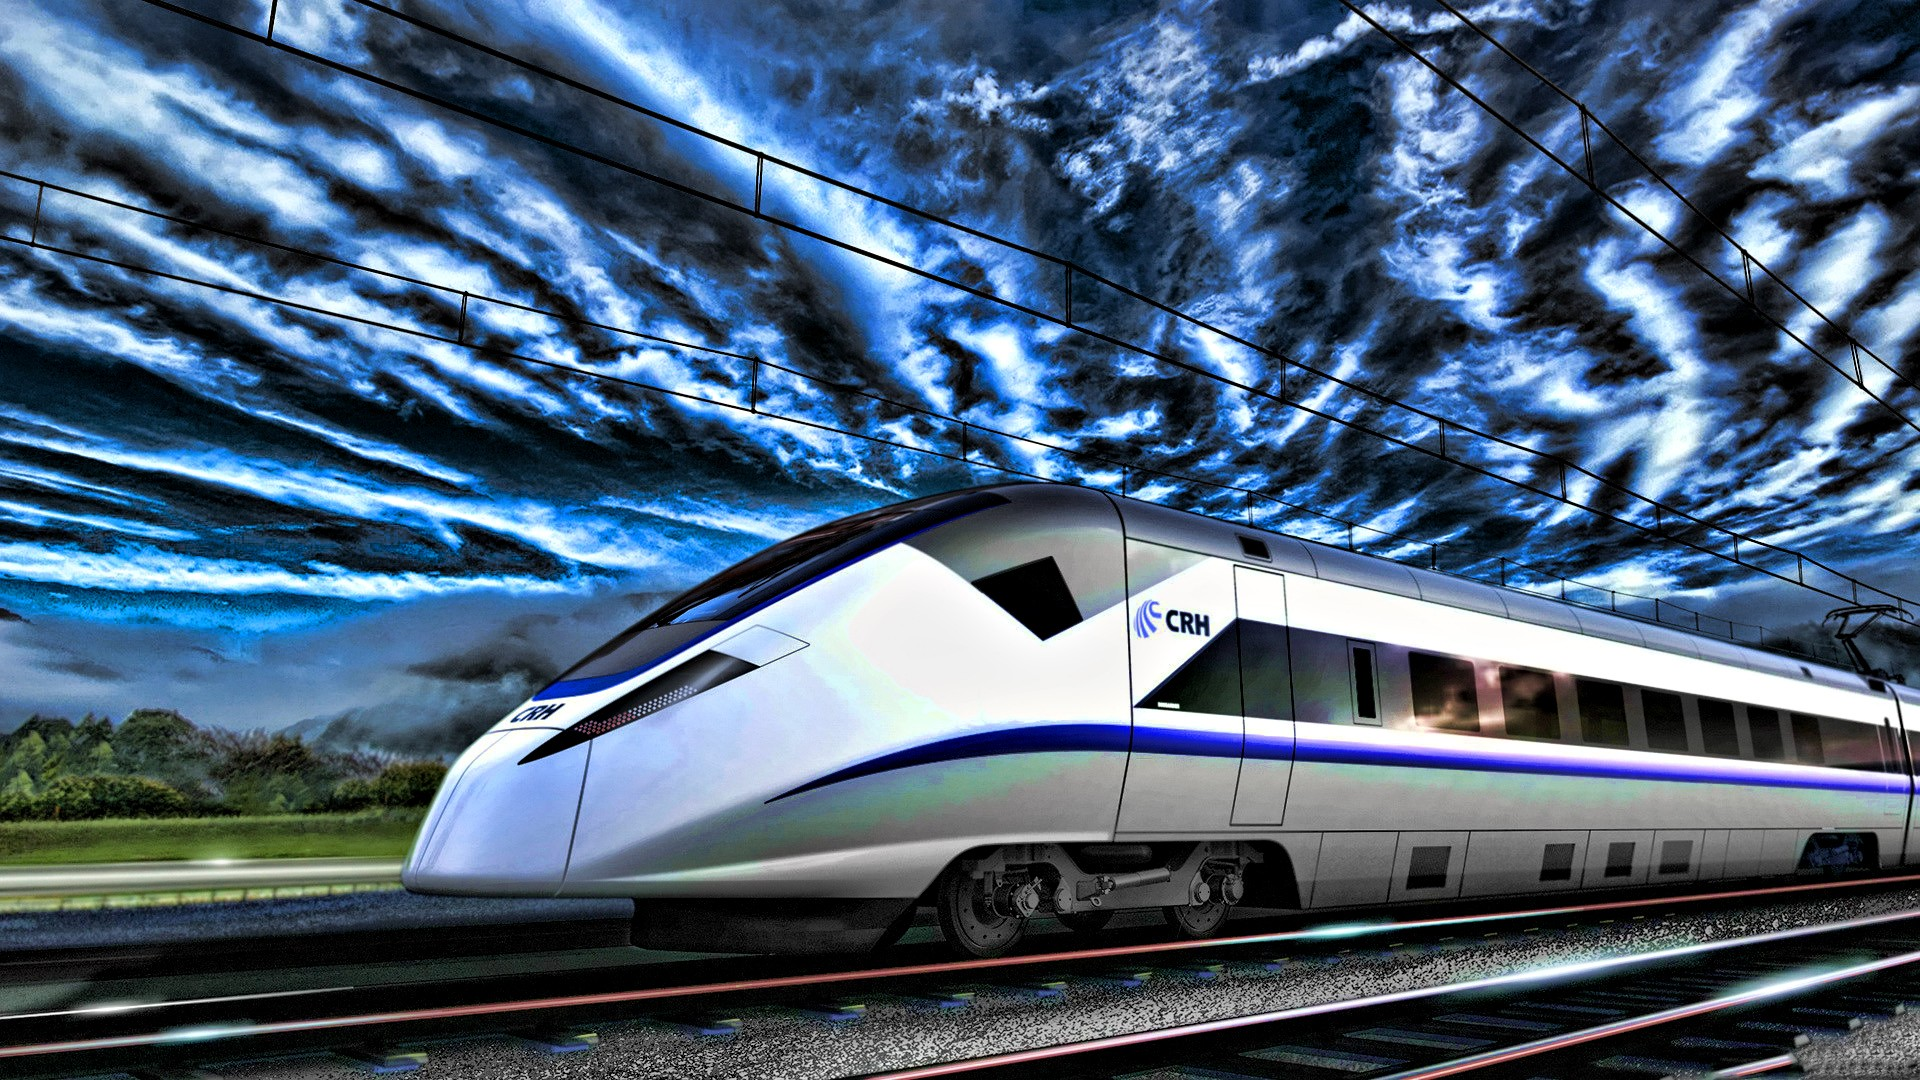 High speed rail. Скоростной поезд Сапсан. Высокоскоростной поезд Сапсан. Синкансэн Сапсан. Скоростной поезд Меркурий.